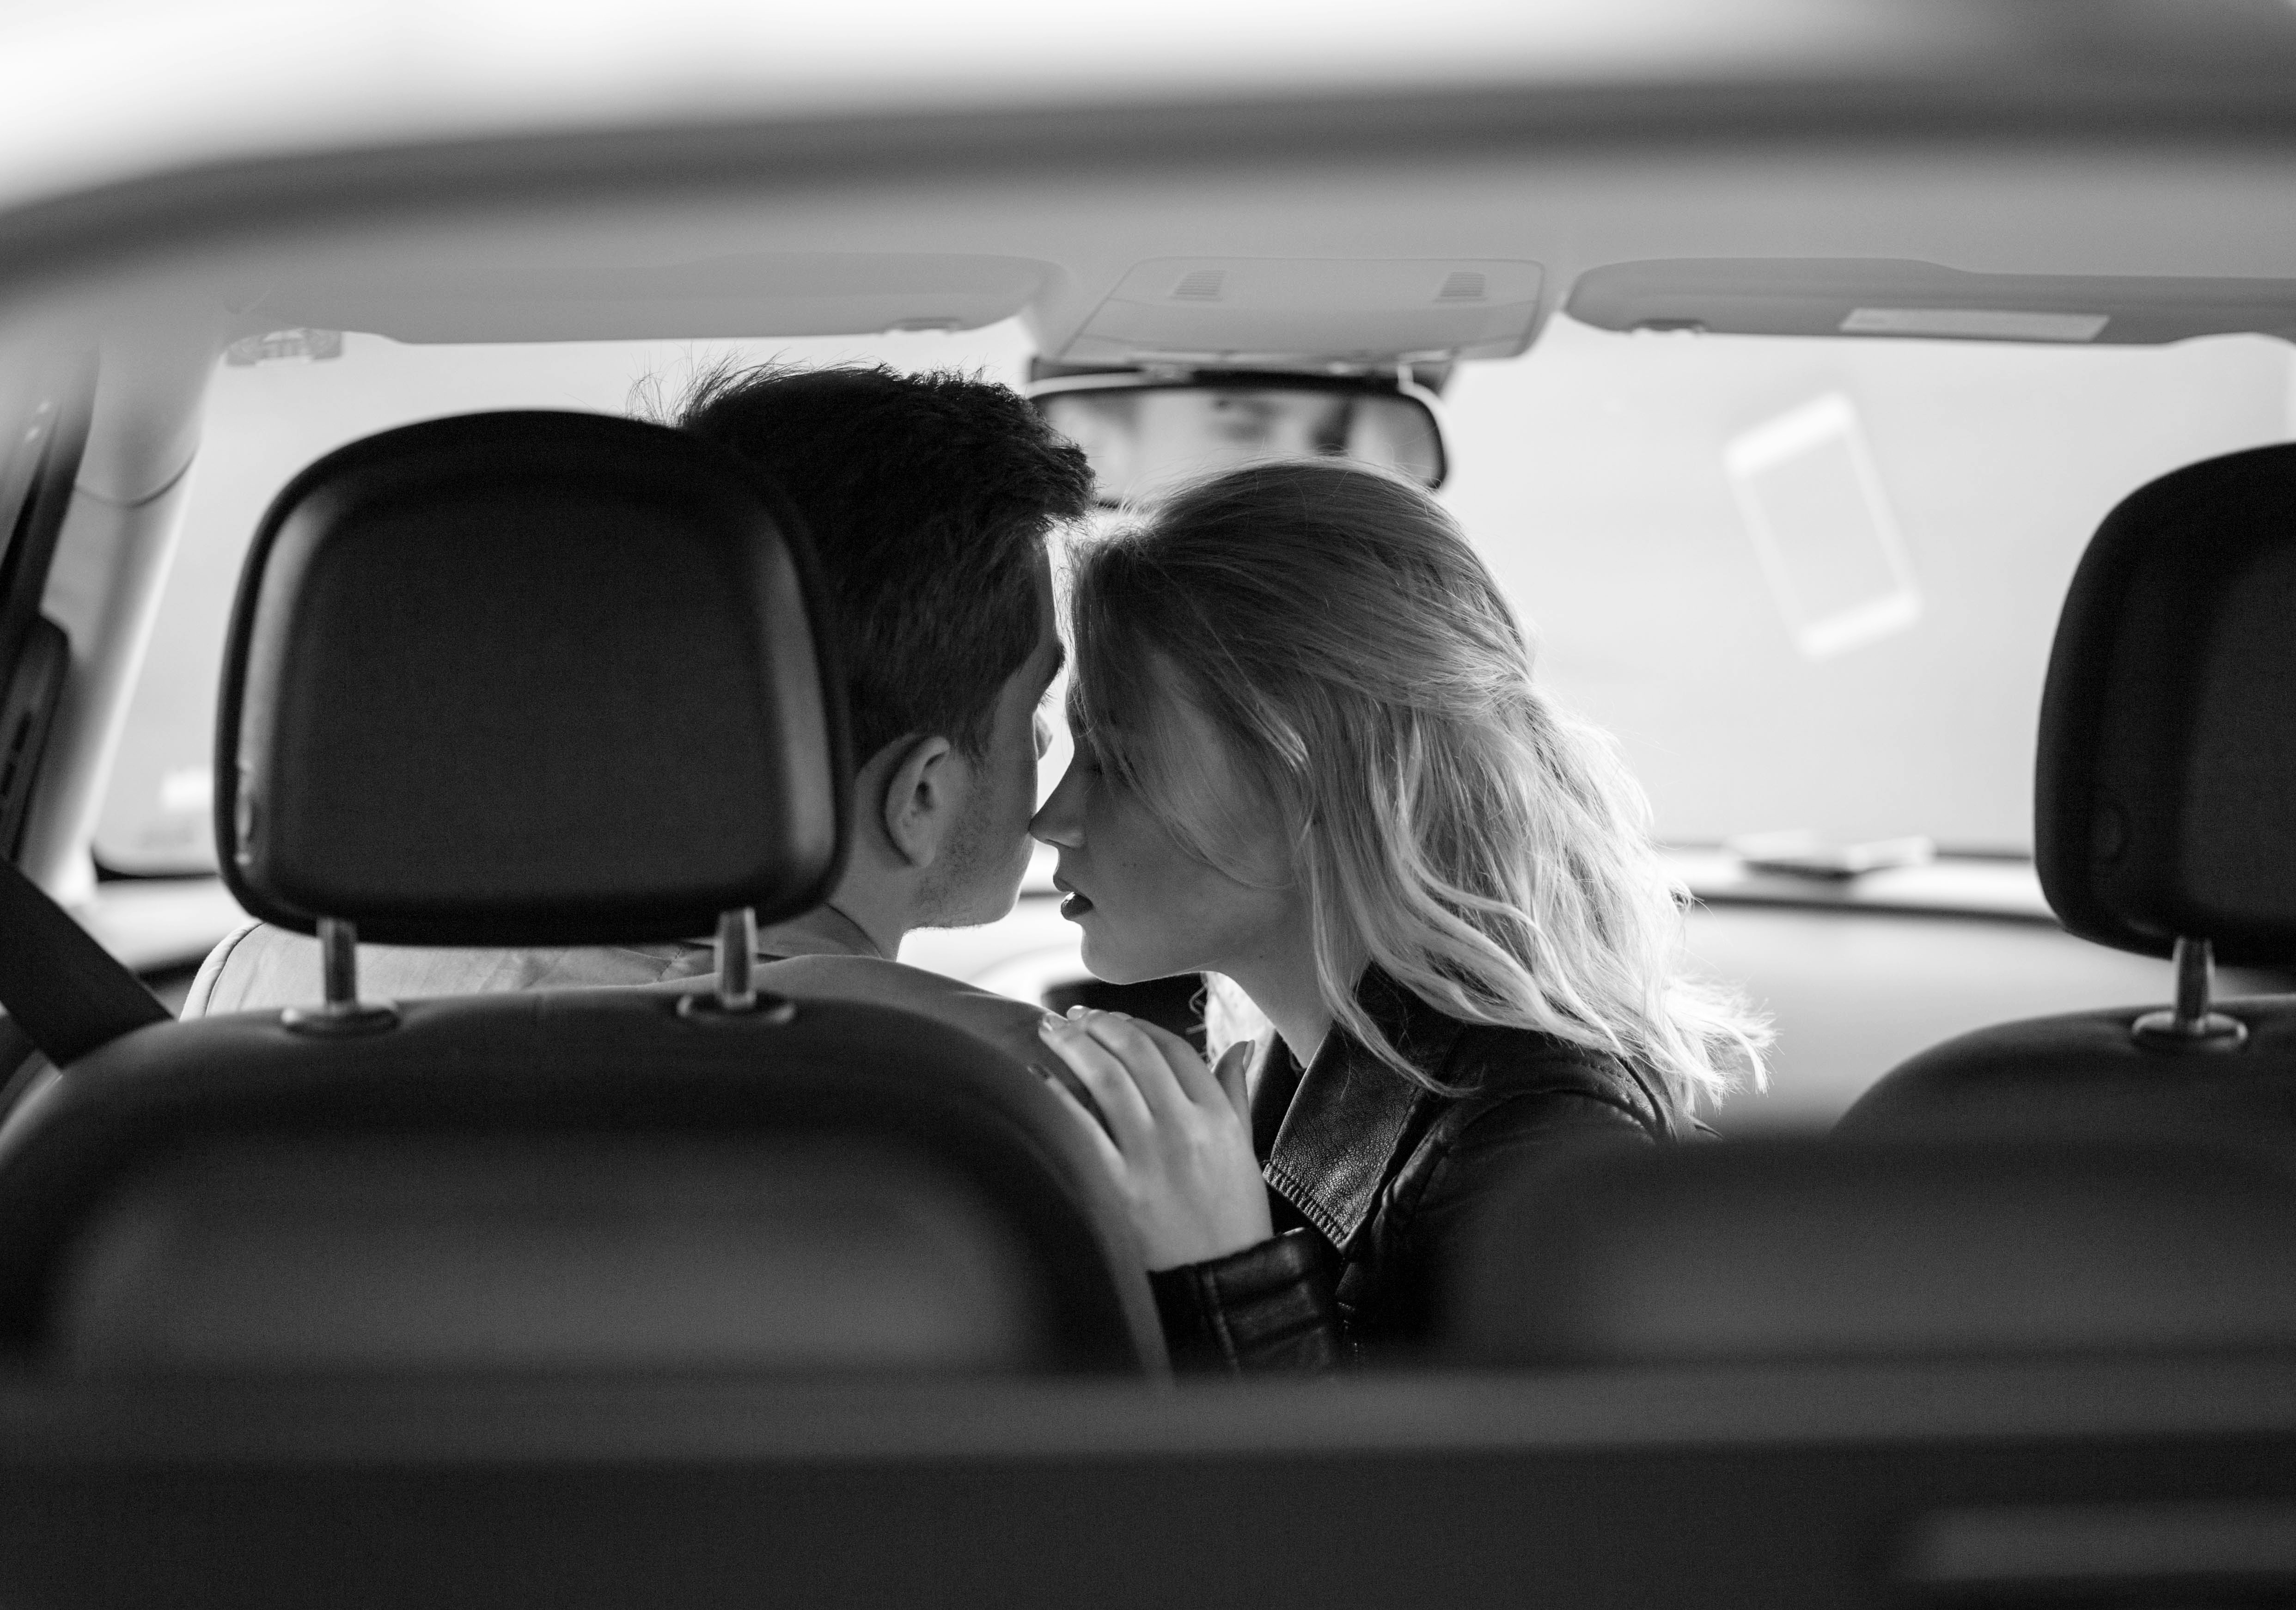 Pareja besándose románticamente en Automóvil. | Fuente: Shutterstock